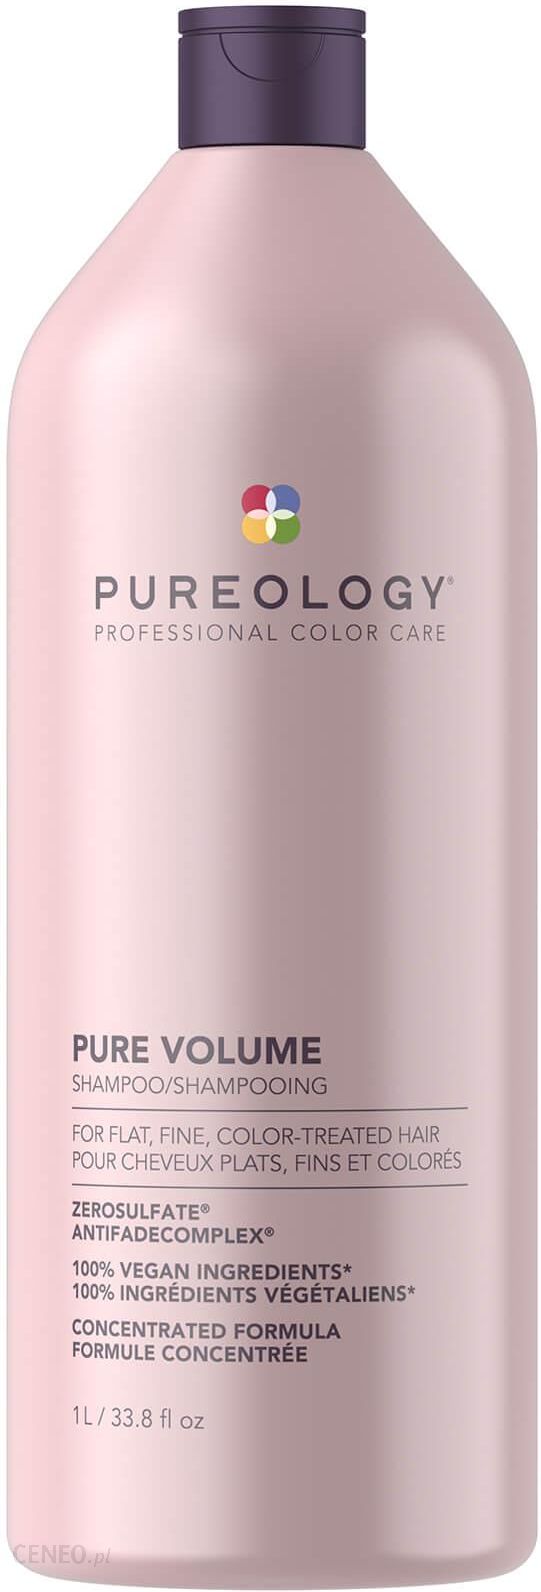 pureology szampon do włosów blond opinie